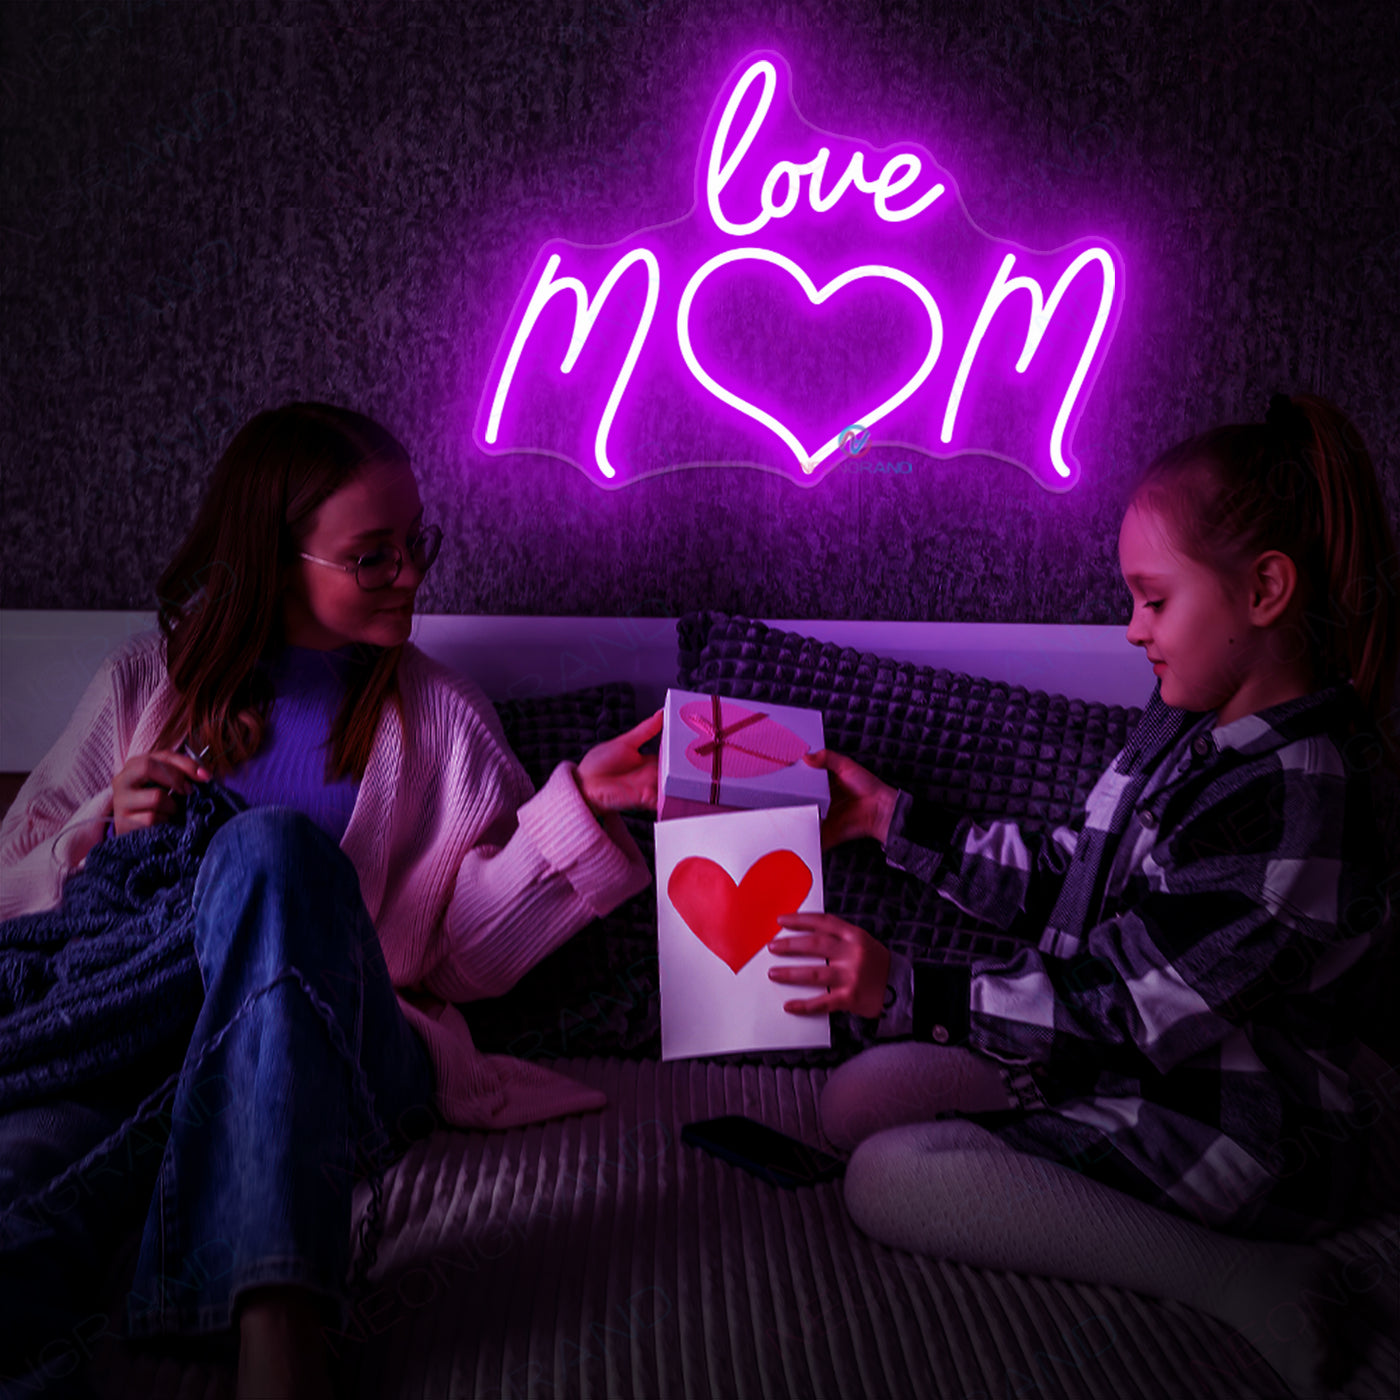 Love Mom Neon Sign Led Light